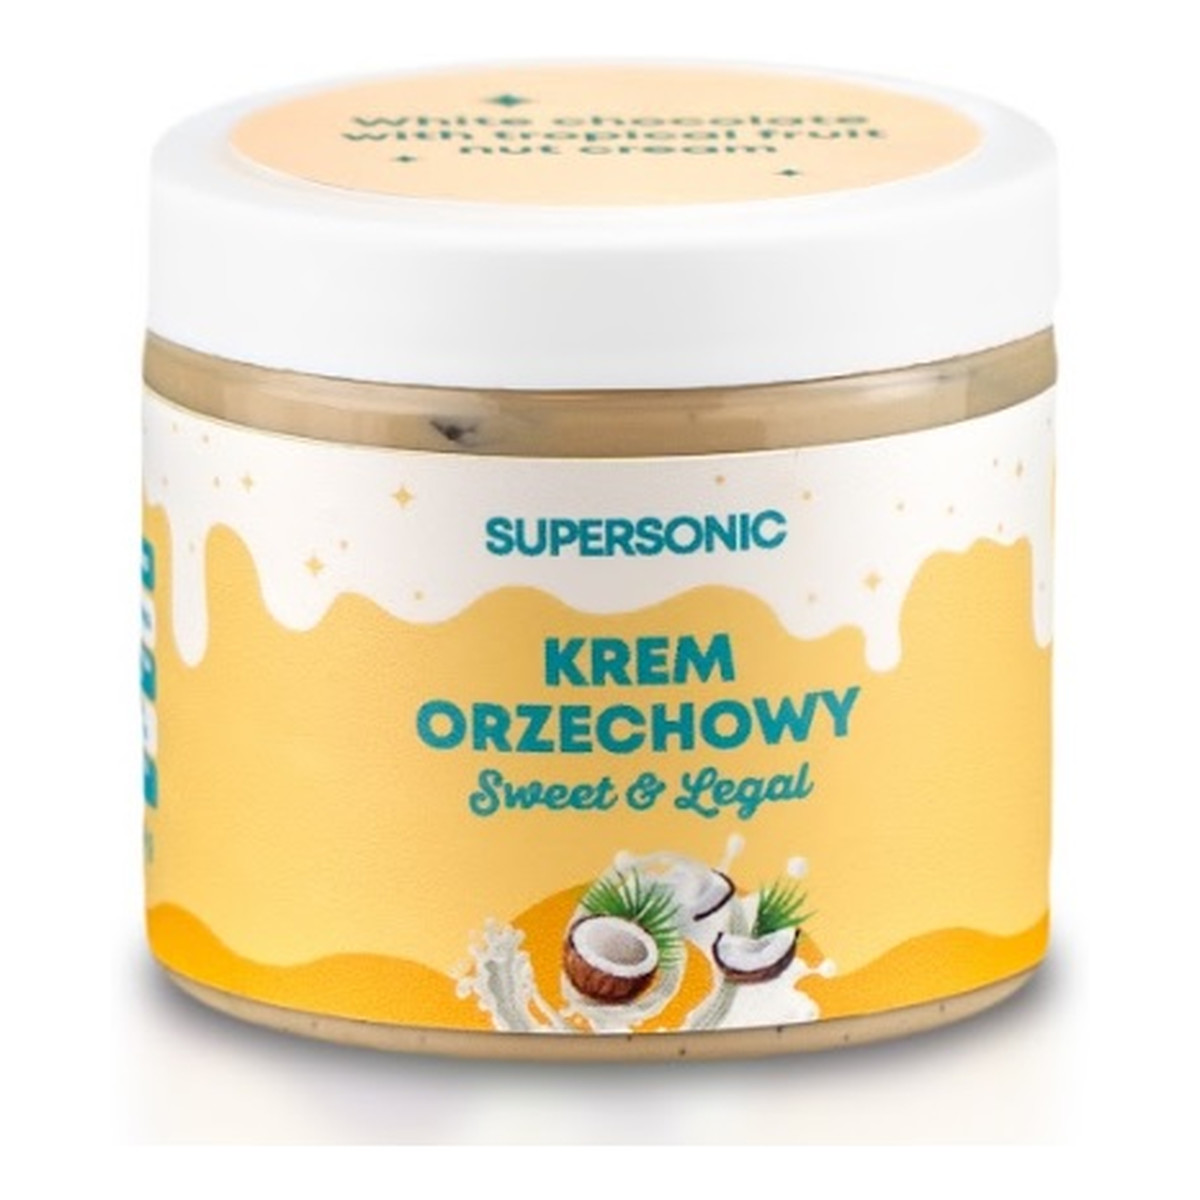 Supersonic Sweet&Legal orzechowy Krem proteinowy o smaku białej czekolady z owocami tropikalnymi 160g